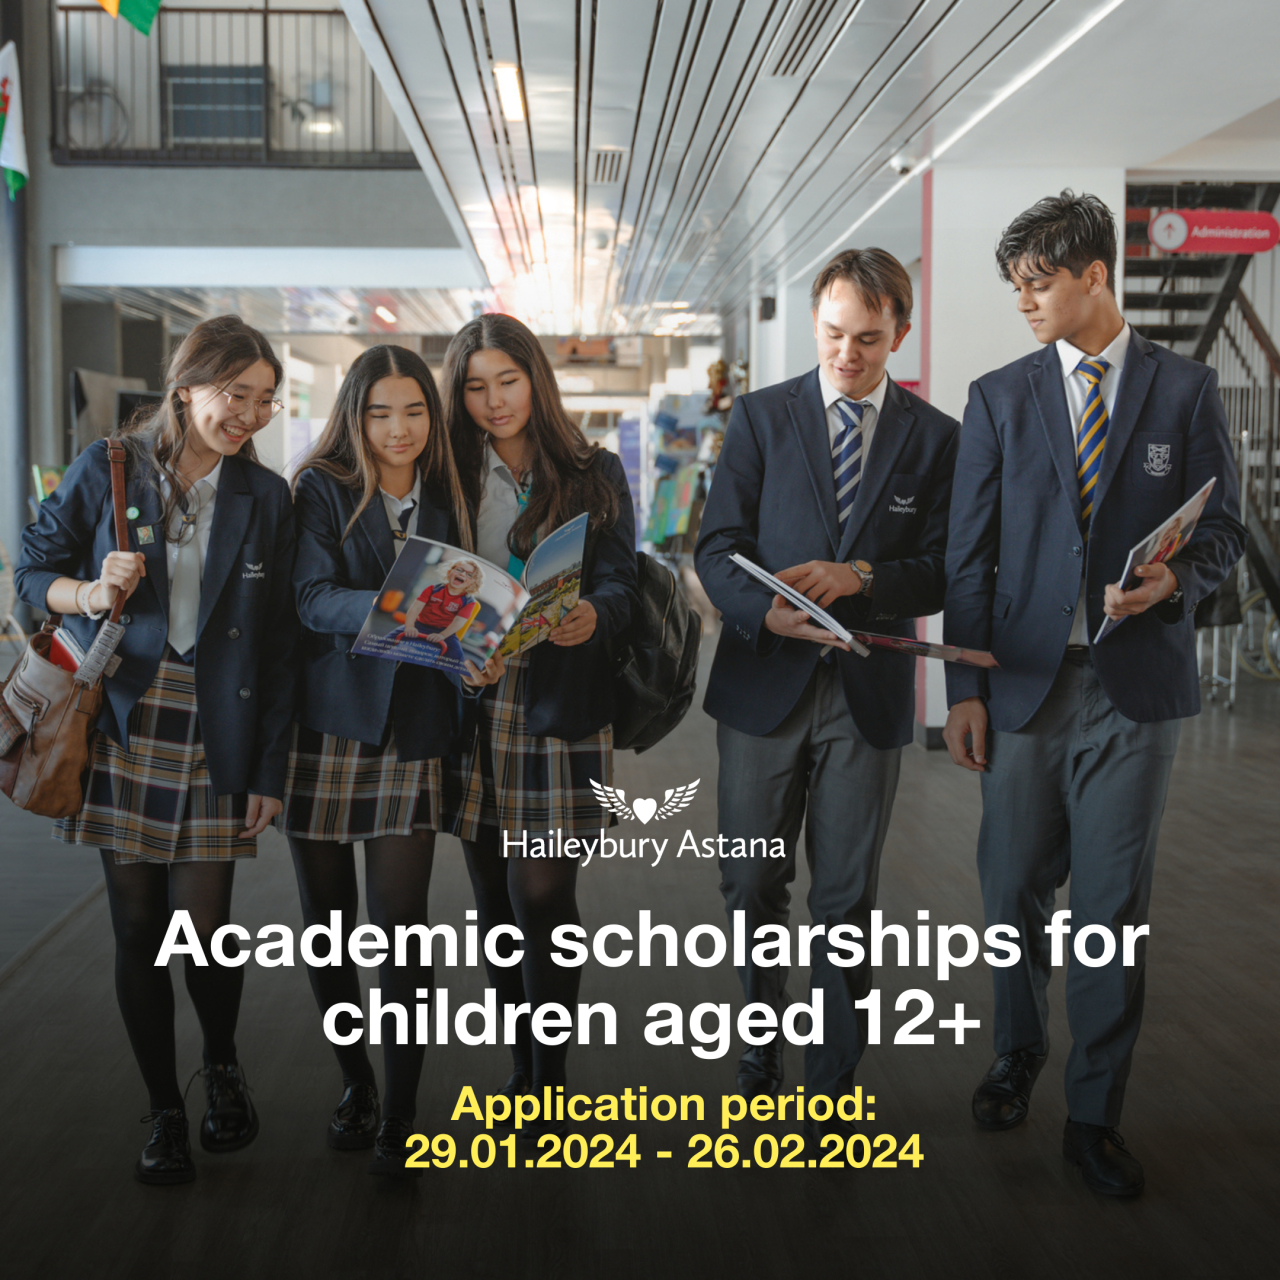 Haileybury Astana Scholarships for pupils aged 12+